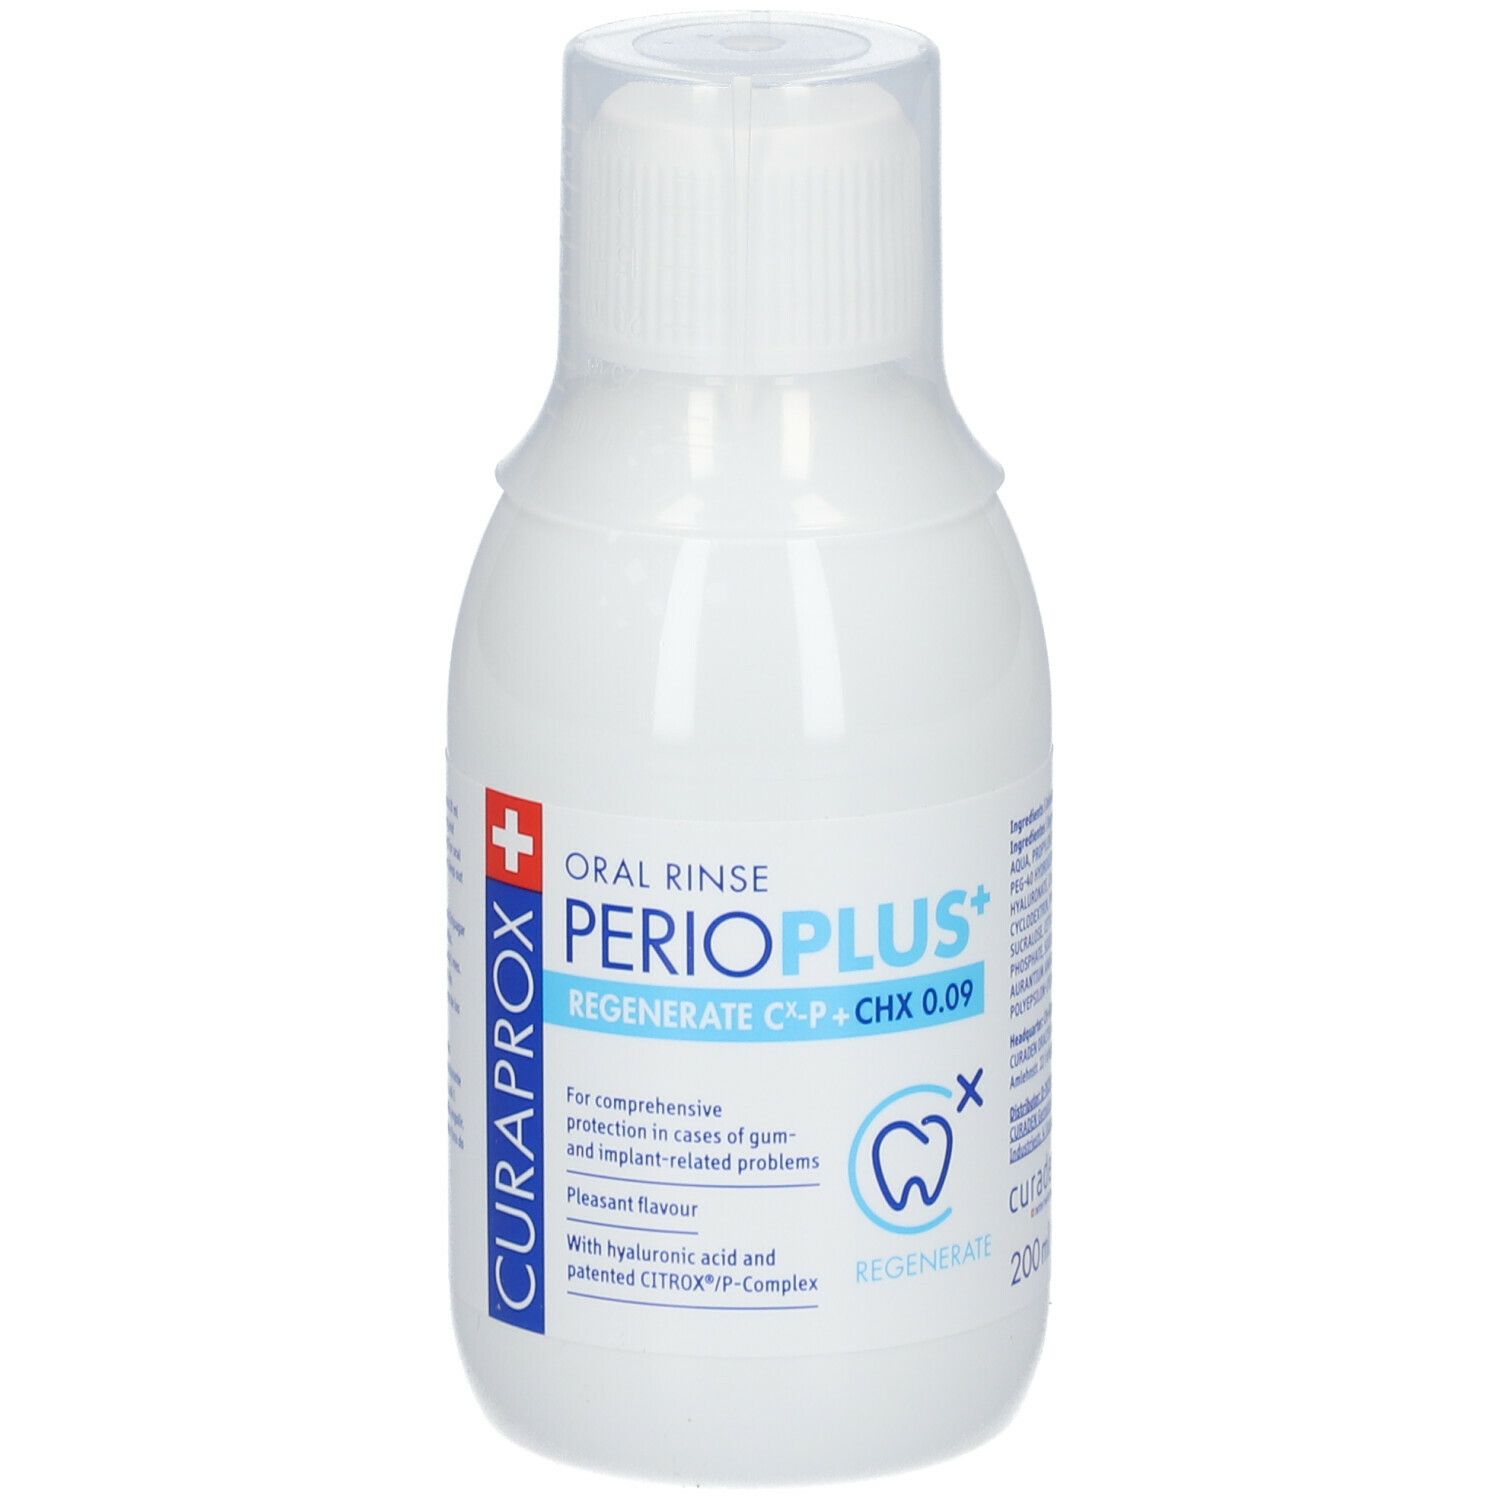 Oral Rinse Perioplus+ Regenerate Cx-P + CHX 0.09